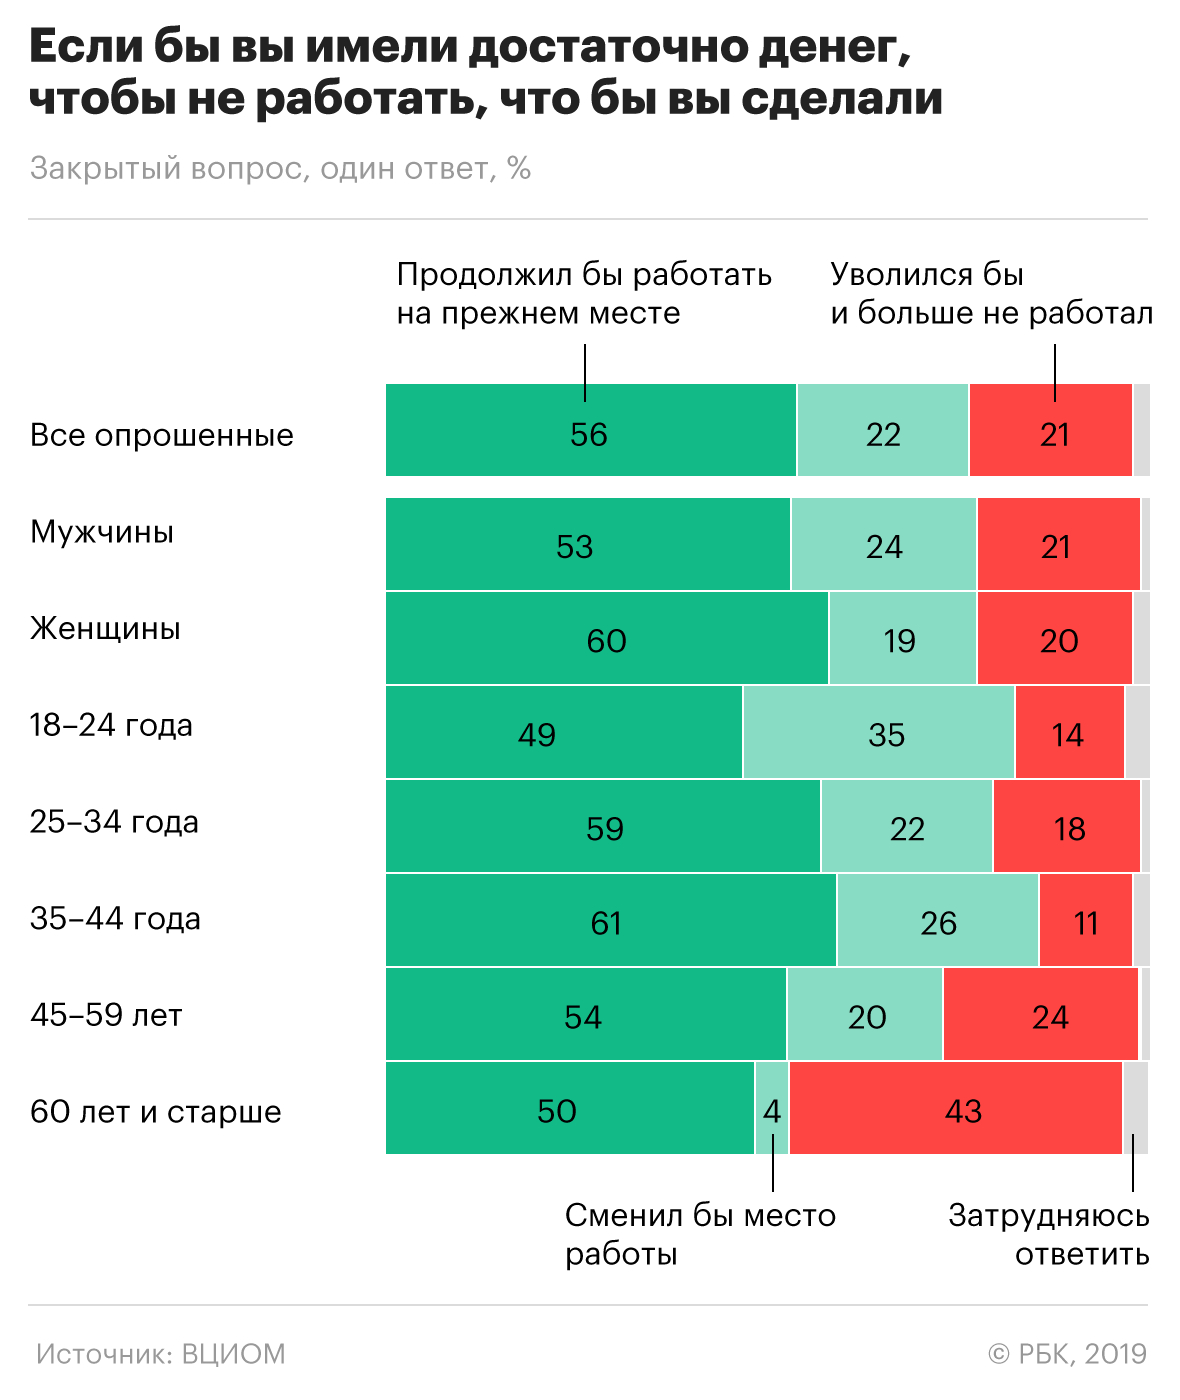 Две трети россиян заявили о готовности работать без нужды в заработке